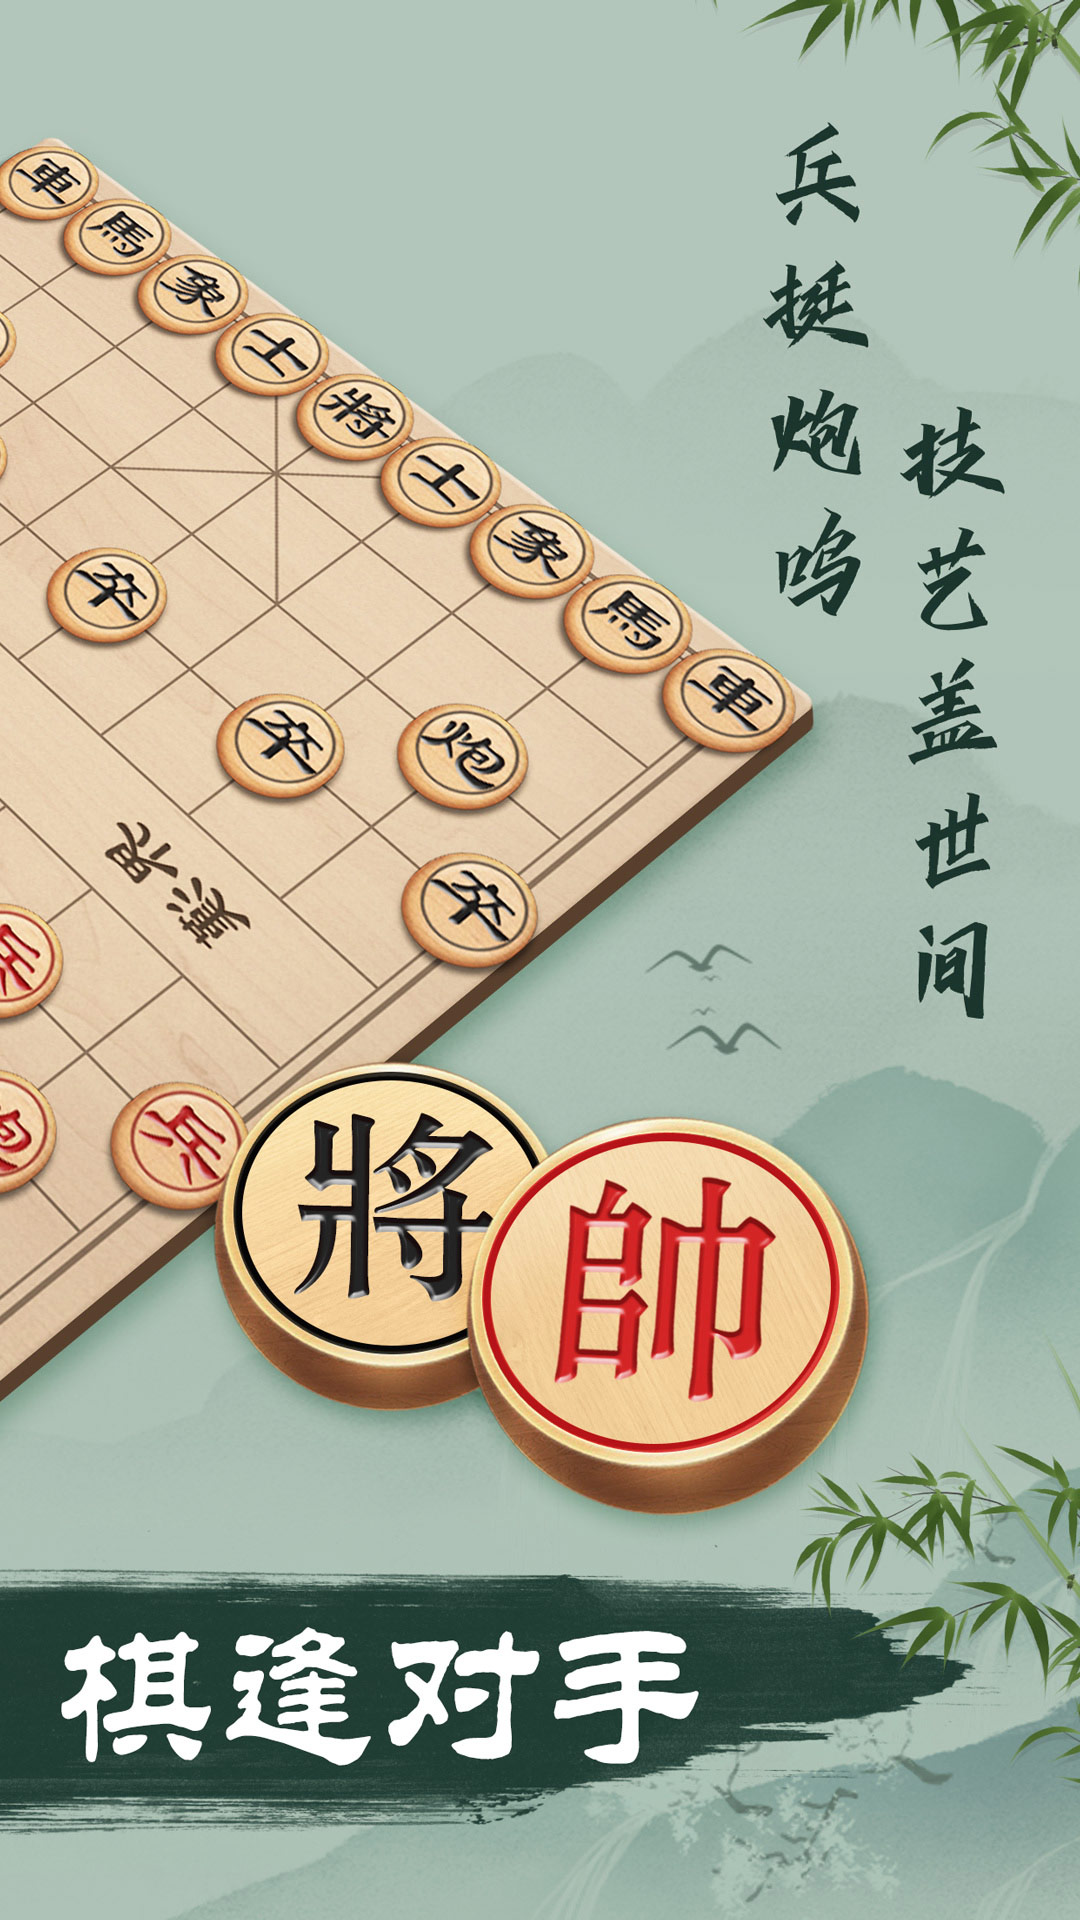 中国象棋软件哪个好